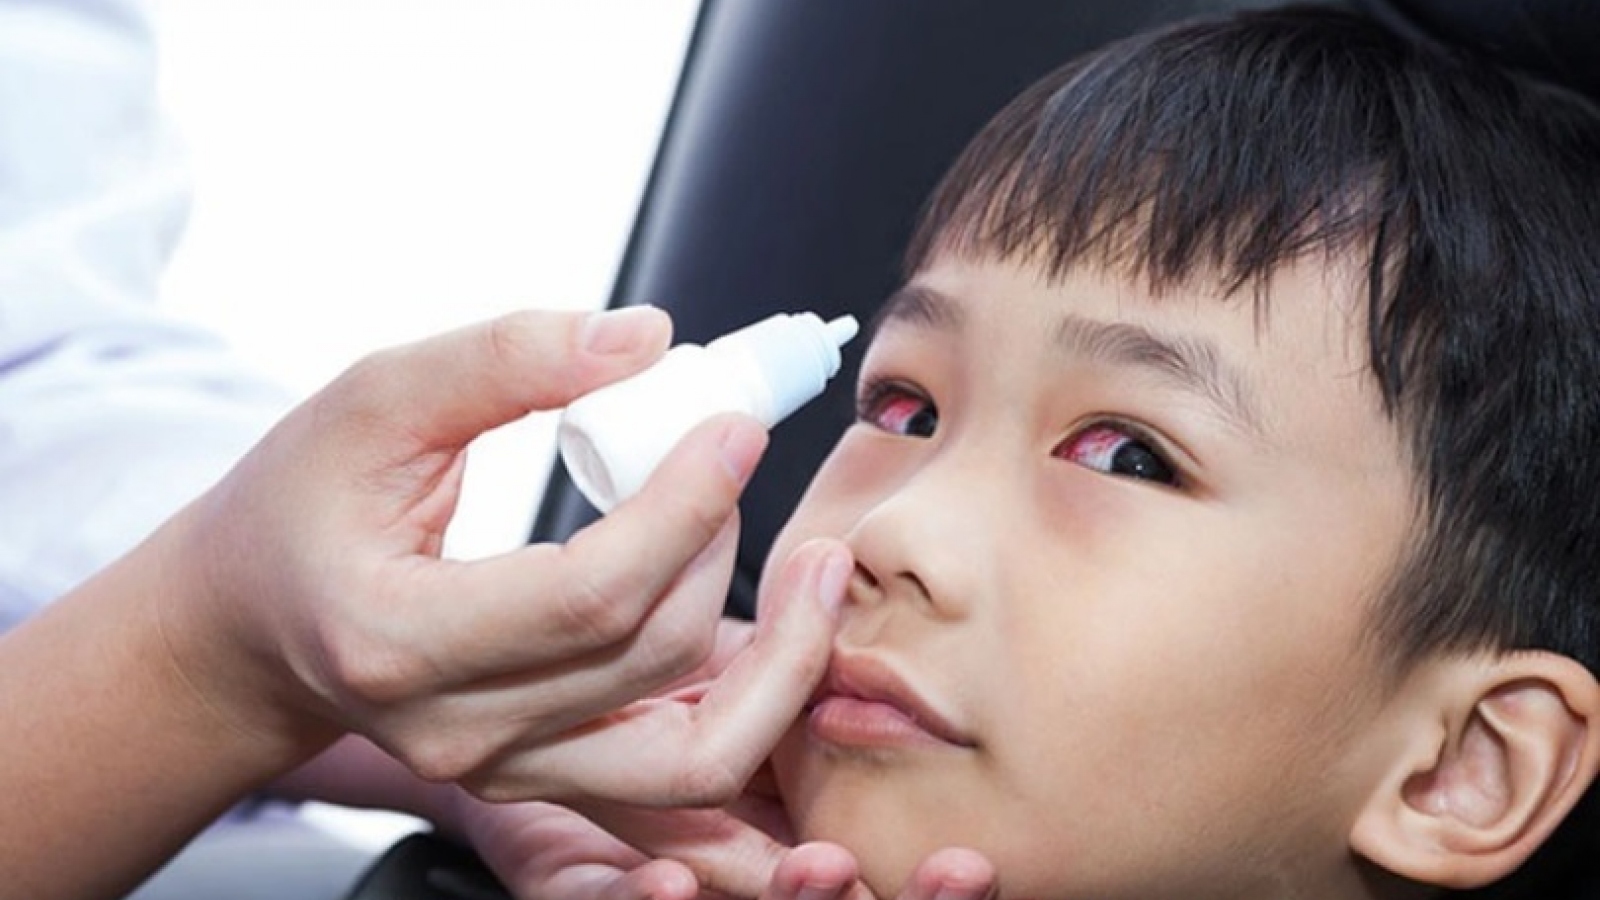 6.000 ca đau mắt đỏ, chủ yếu là trẻ em ở Quảng Bình